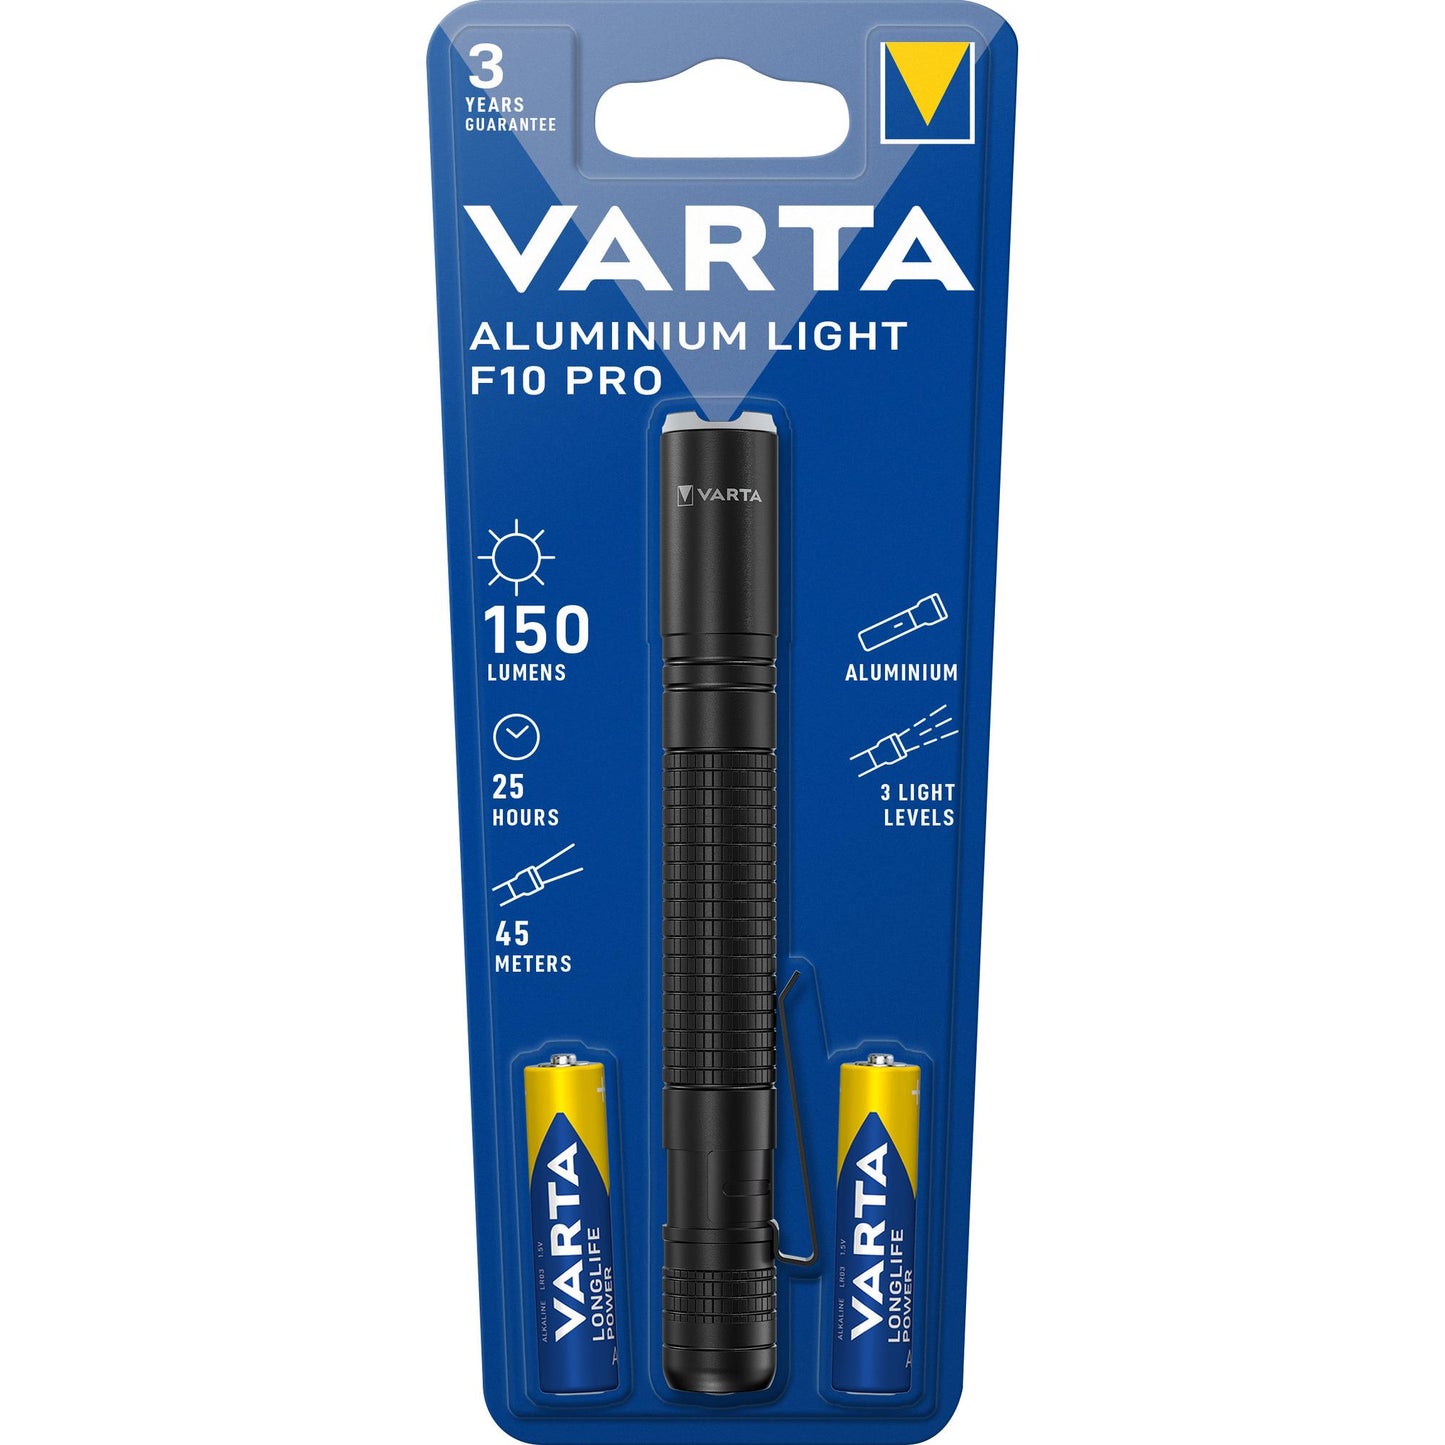 VARTA LED Taschenlampe Aluminium Light, 150lm inkl. 2x AAA Alkaline Batterie, Retail Blister